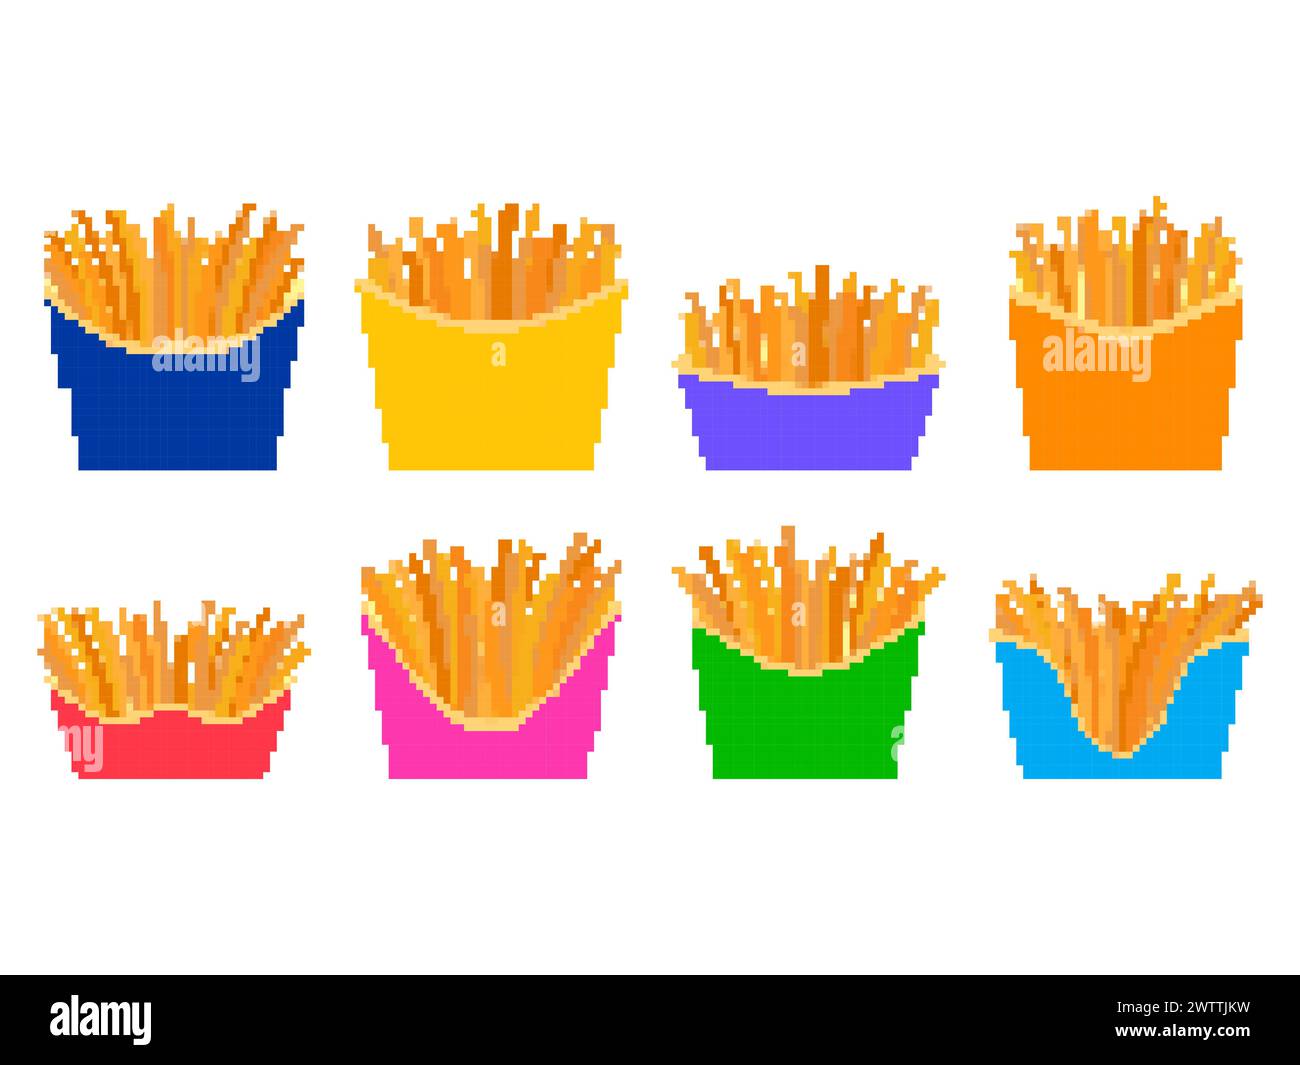 Pixelsymbolsatz Pommes Frites isoliert auf weißem Hintergrund. Fast Food, gebratene Kartoffeln im Pixelstil. Design von Bannern, Postern und Werbeprofis Stock Vektor